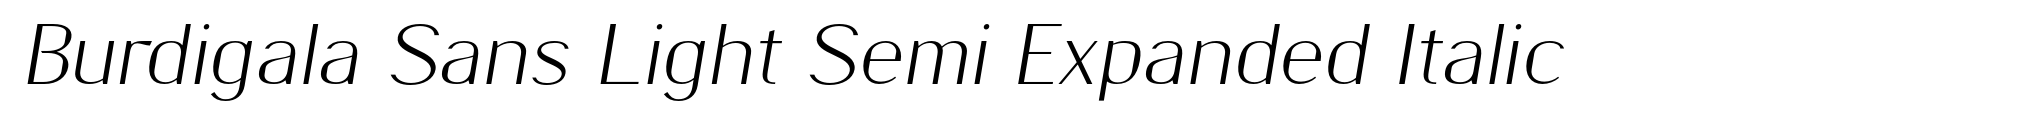 Burdigala Sans Light Semi Expanded Italic image